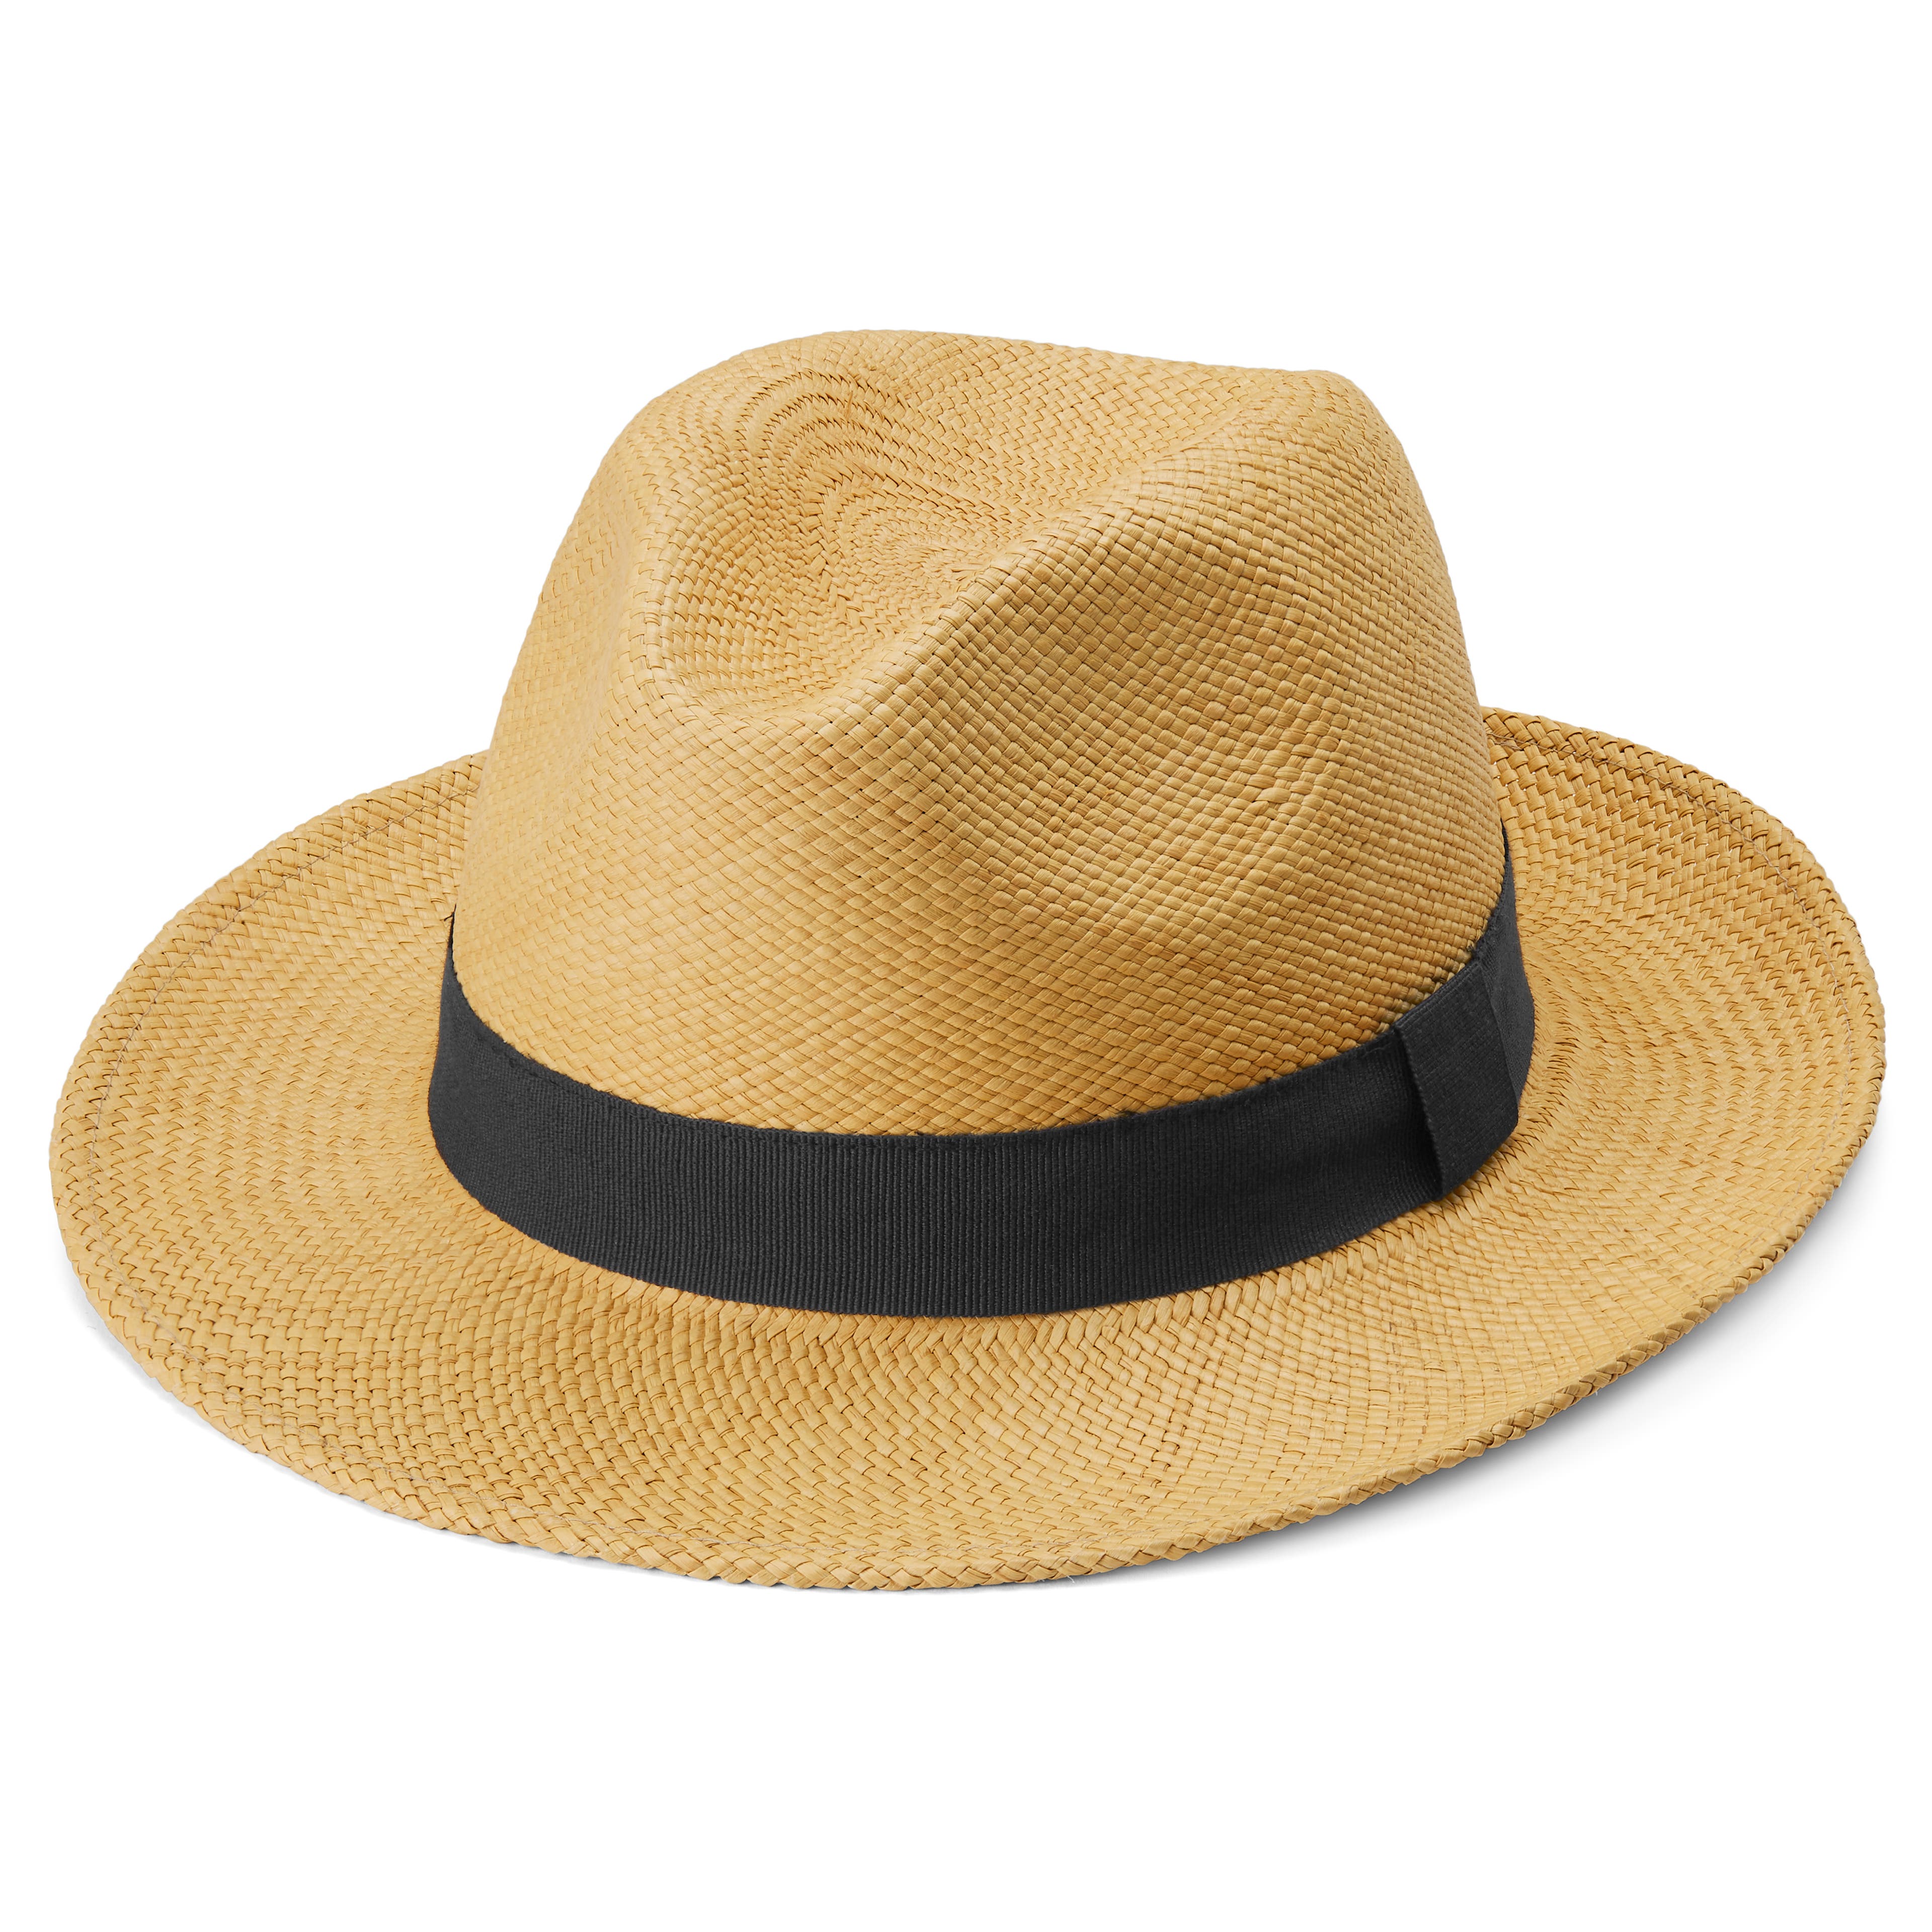 Men's Hats  192 Styles for men in stock